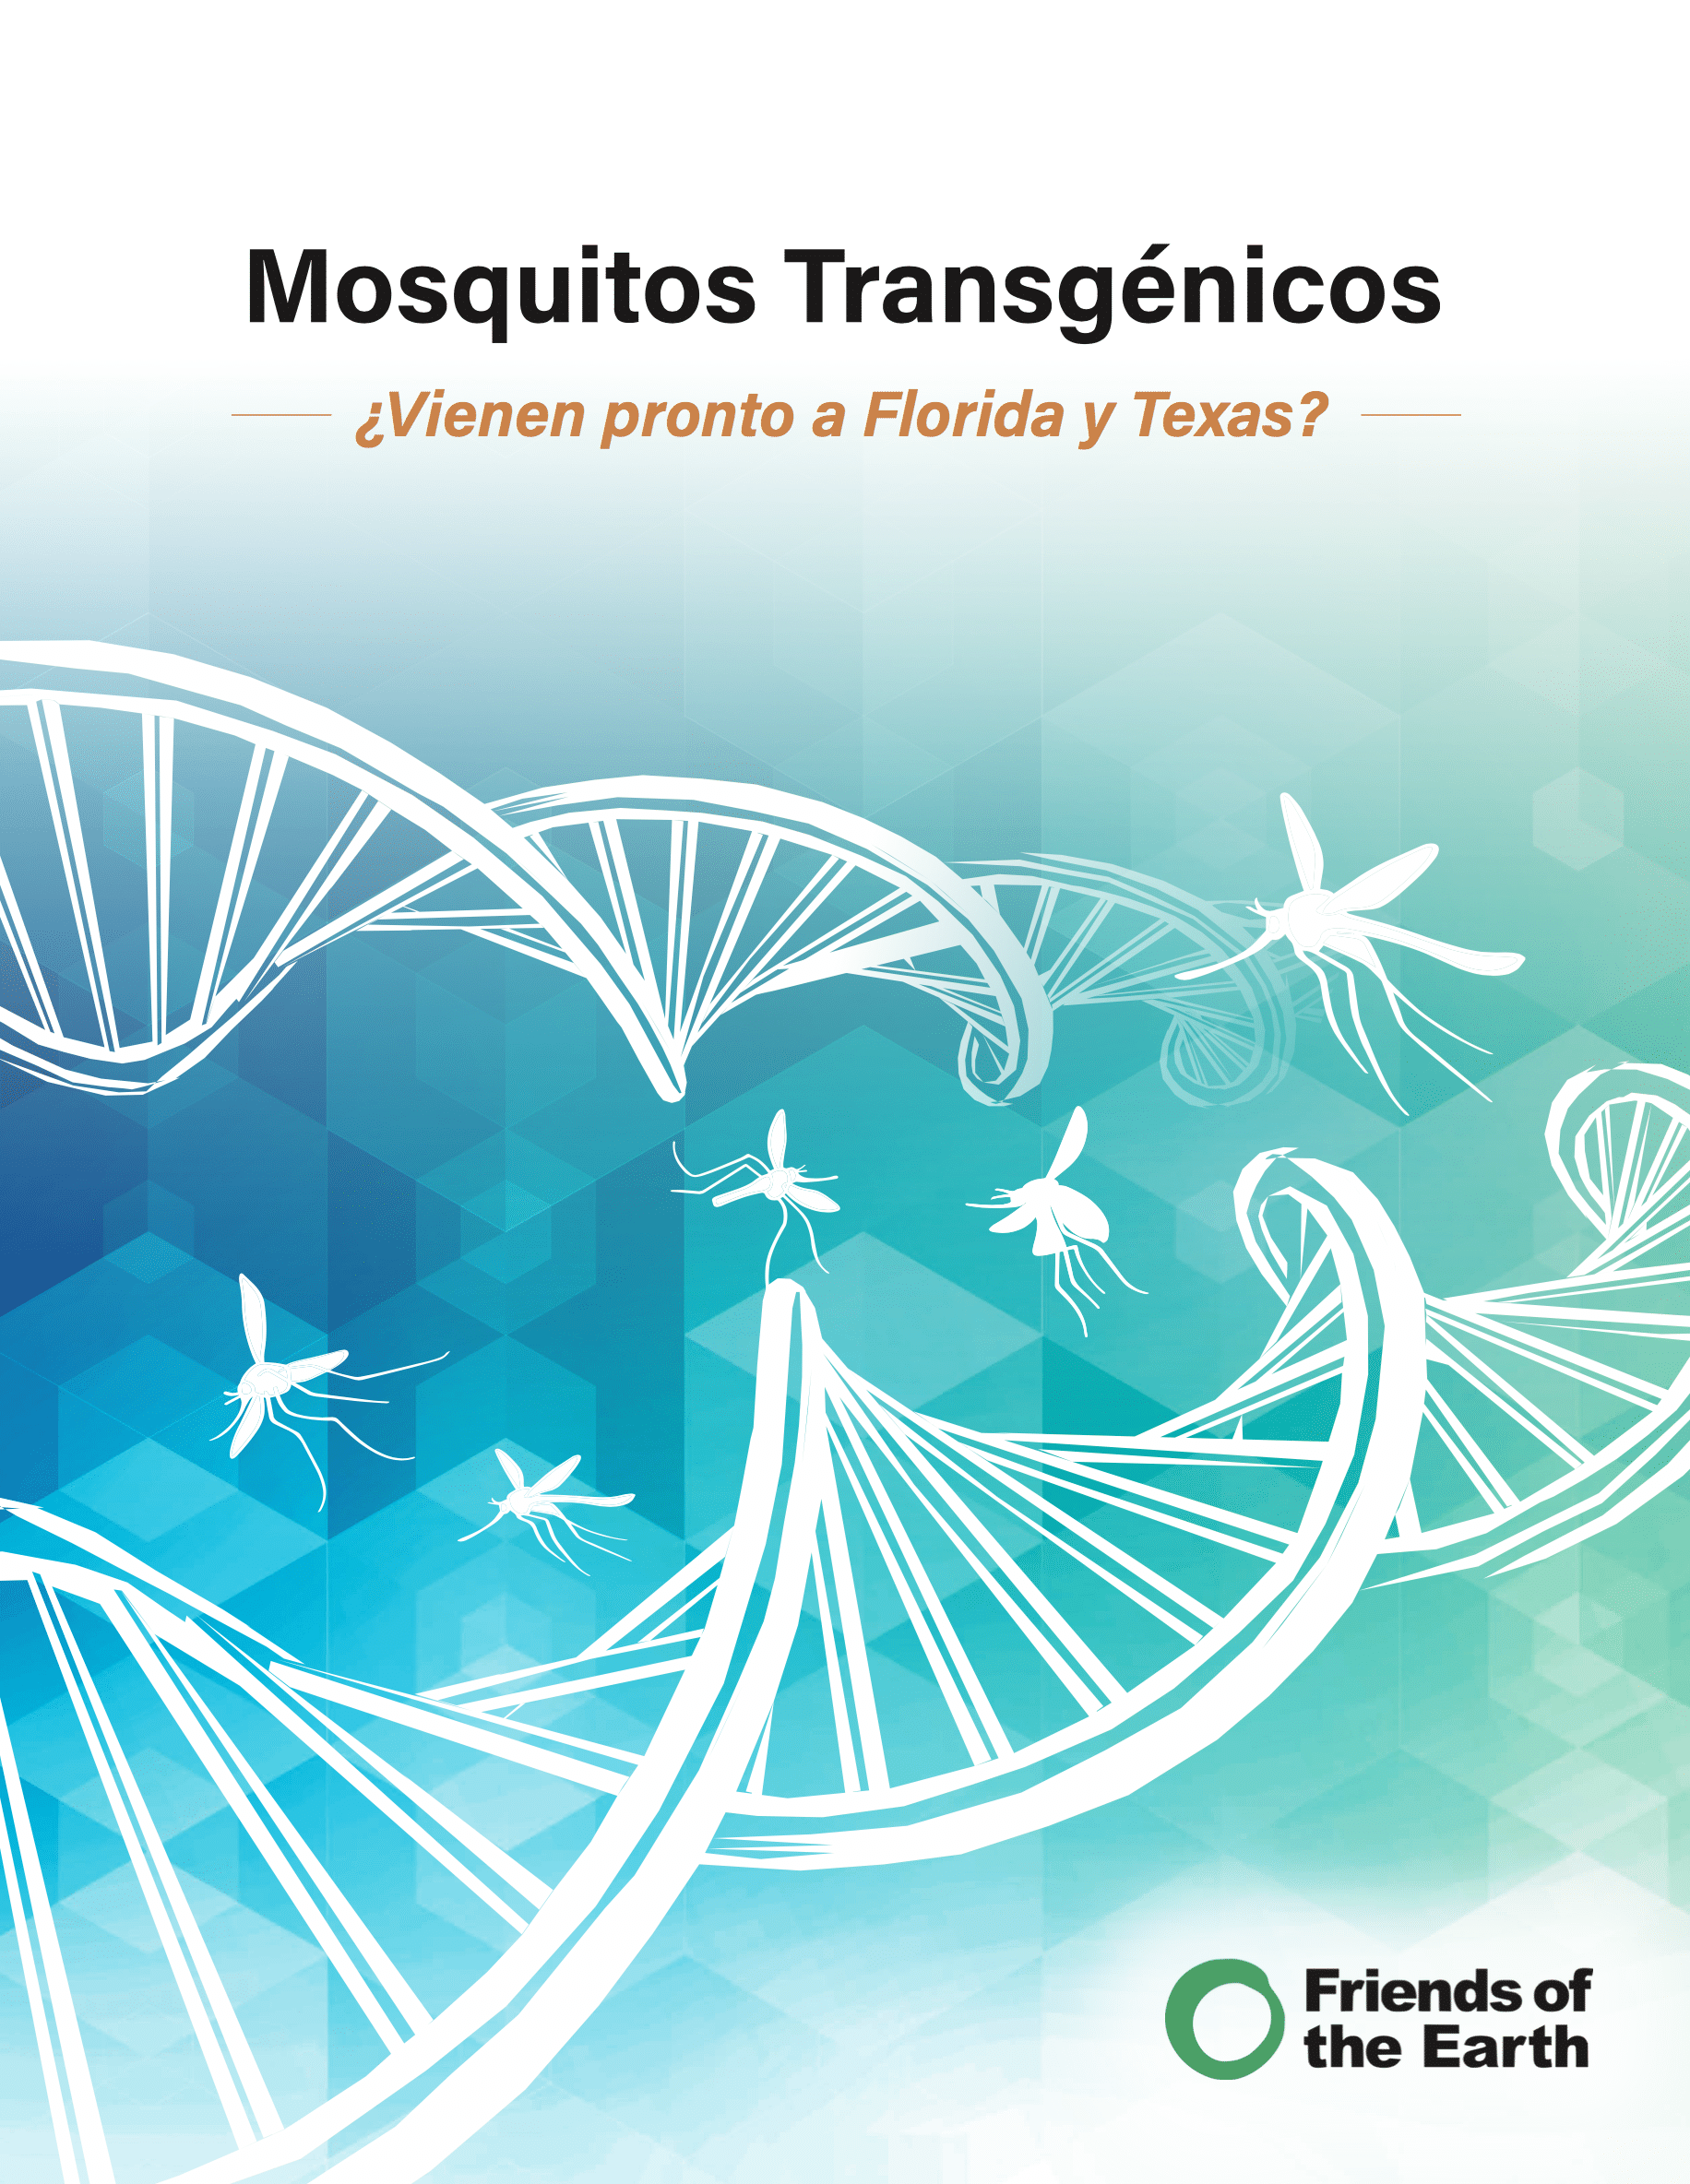 Mosquitos Transgénicos: ¿Vienen pronto a Florida y Texas?